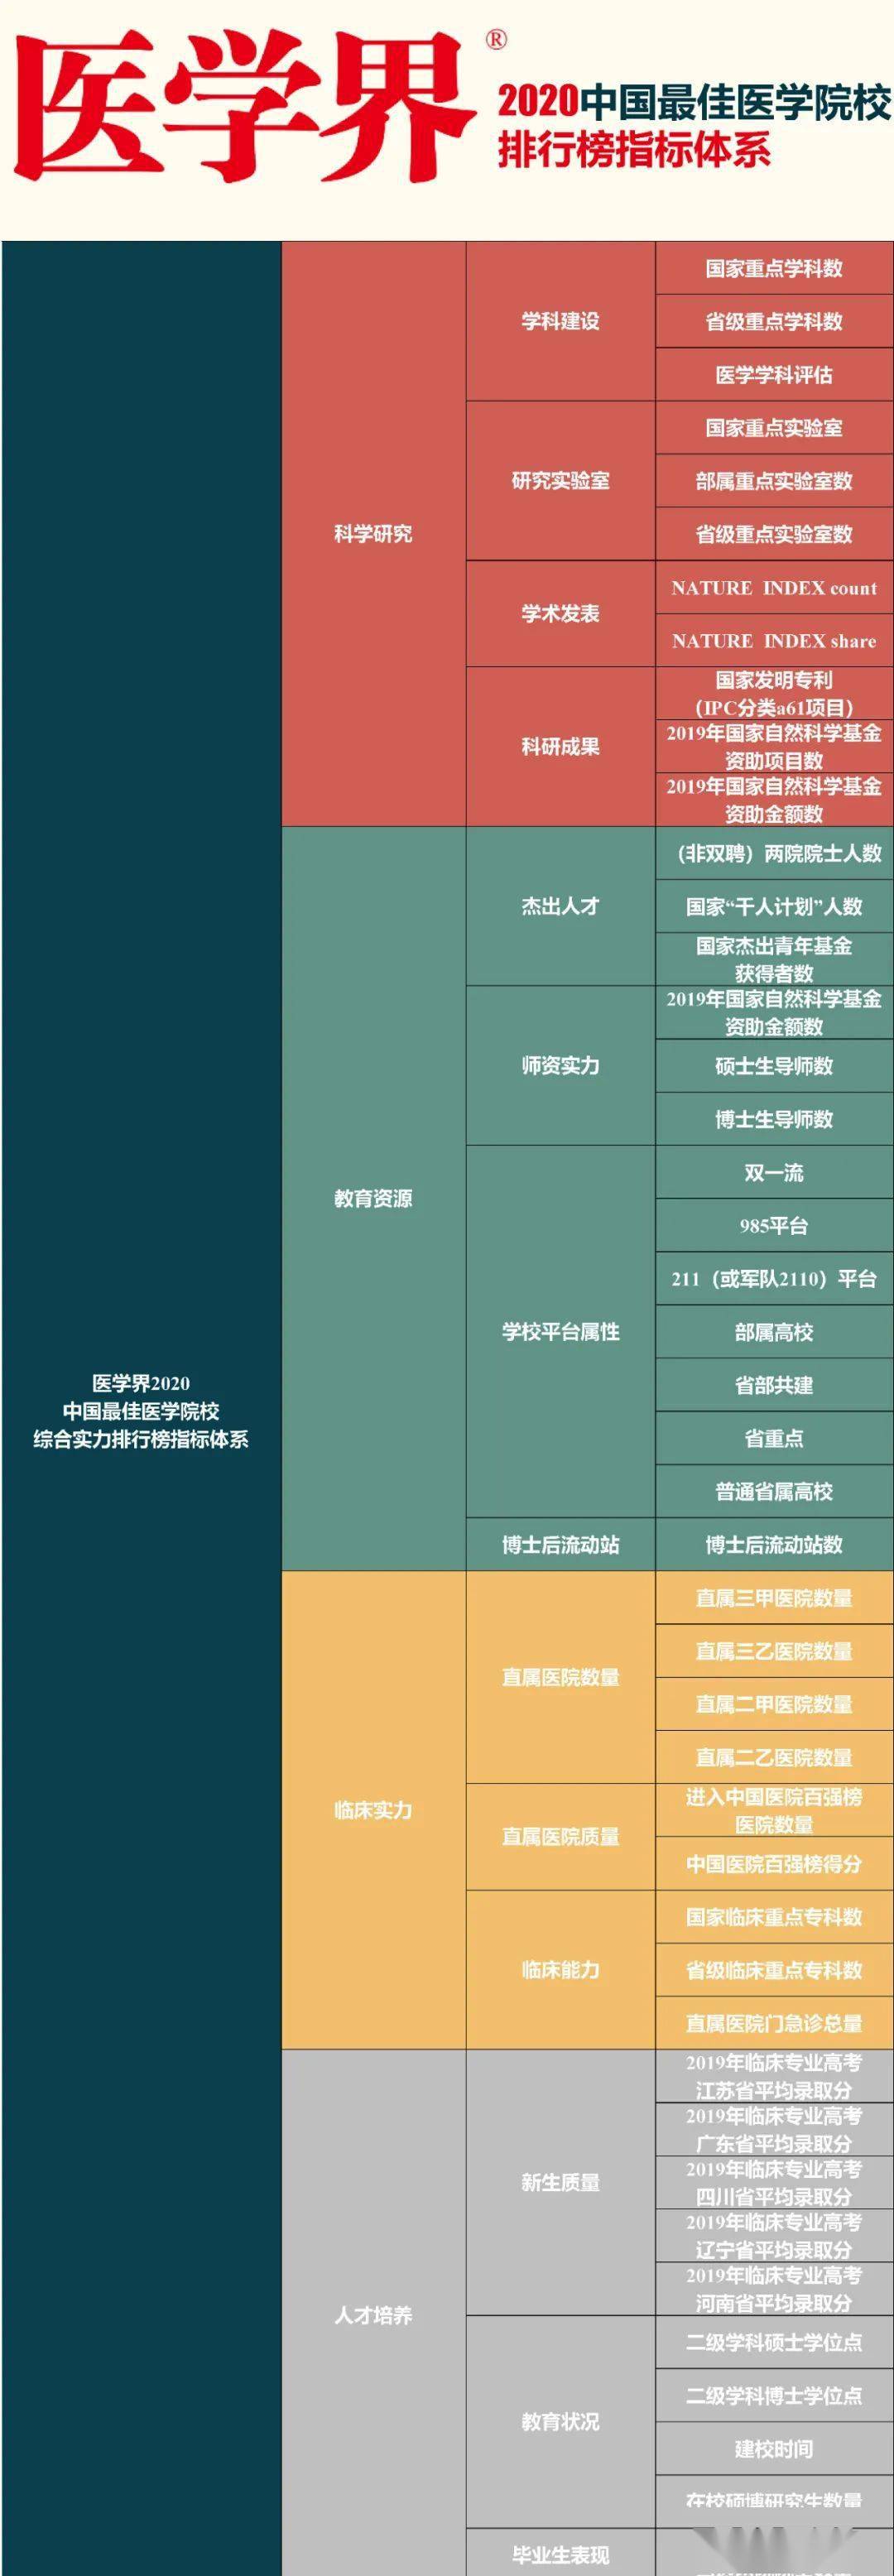 江西医学院排名2020_2020中国最佳医学院排行榜发布!吉林省两所高校上榜